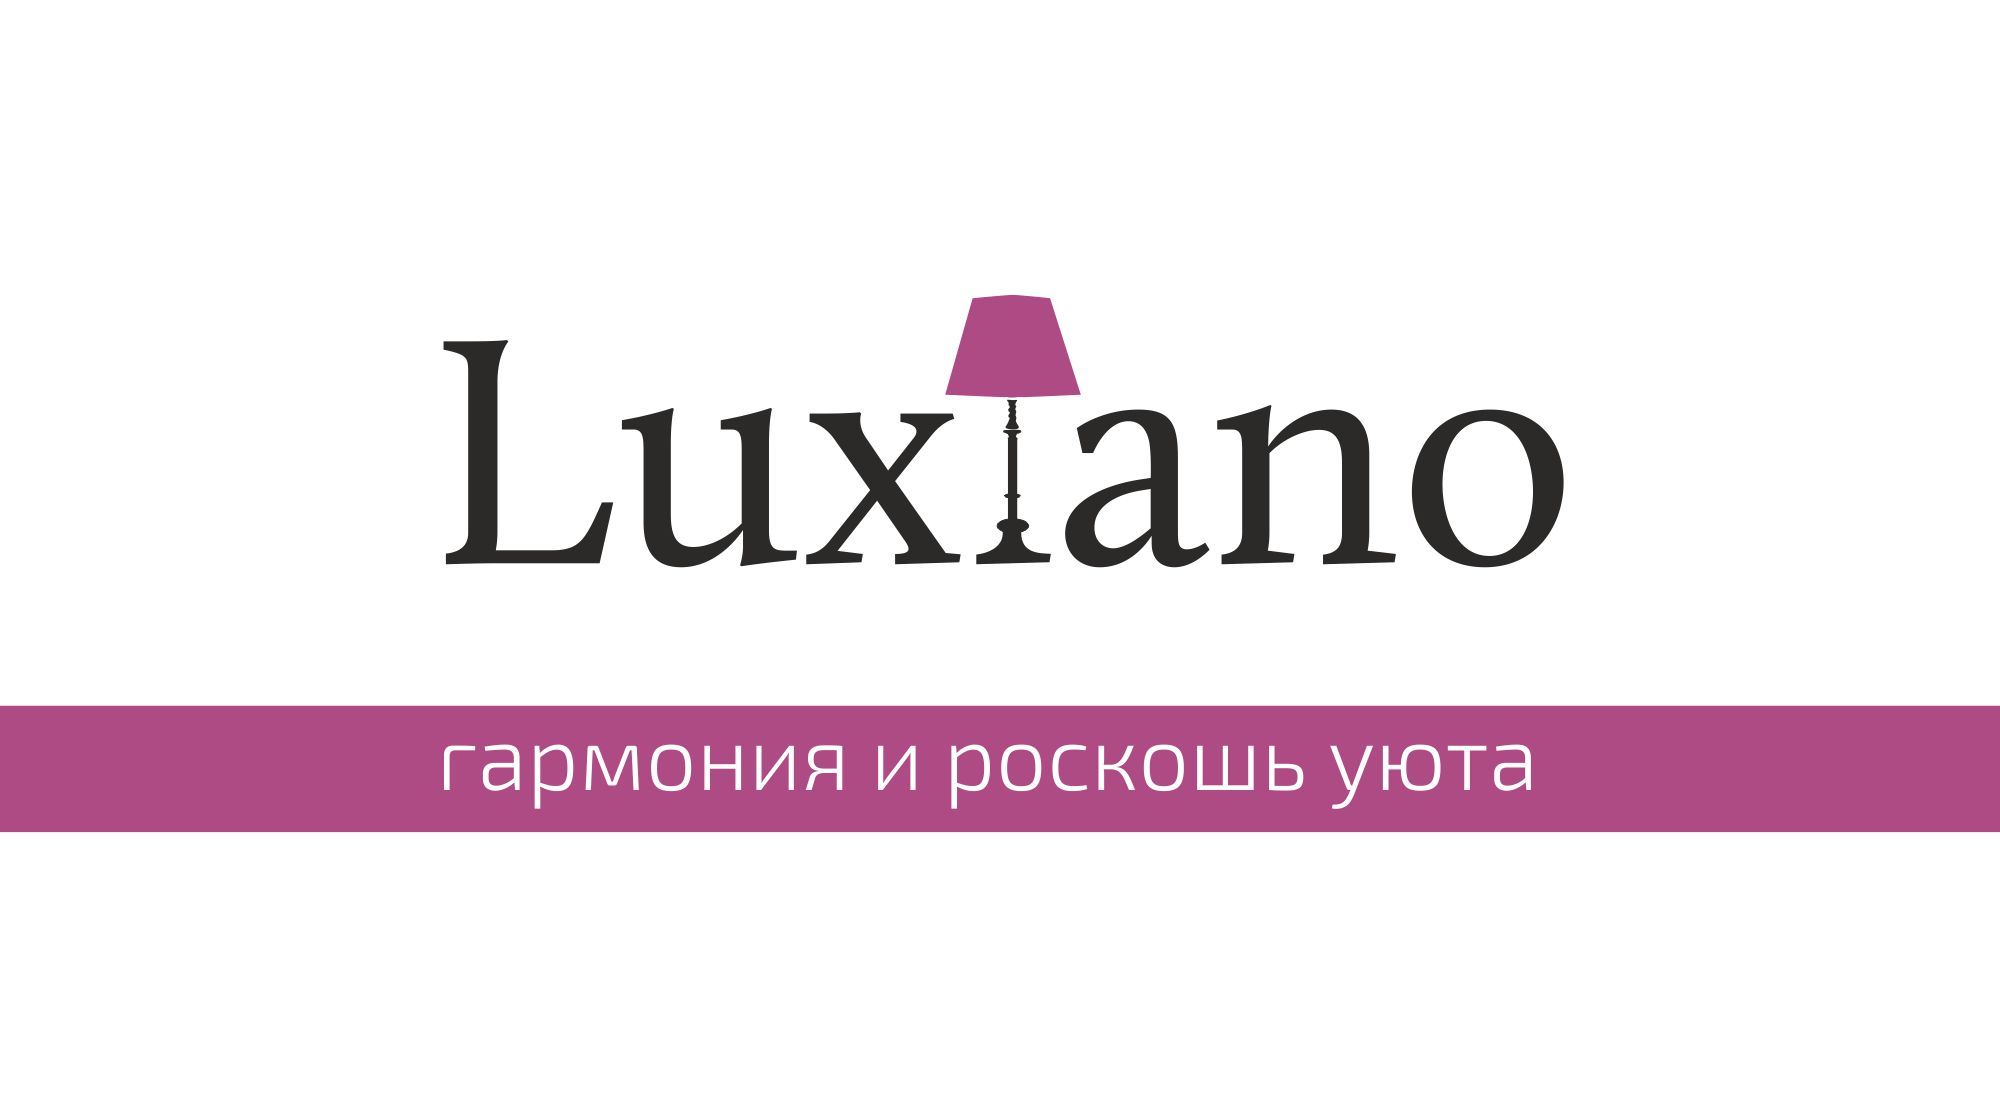 интернет магазин luxiano.ru - дизайнер 1lvai